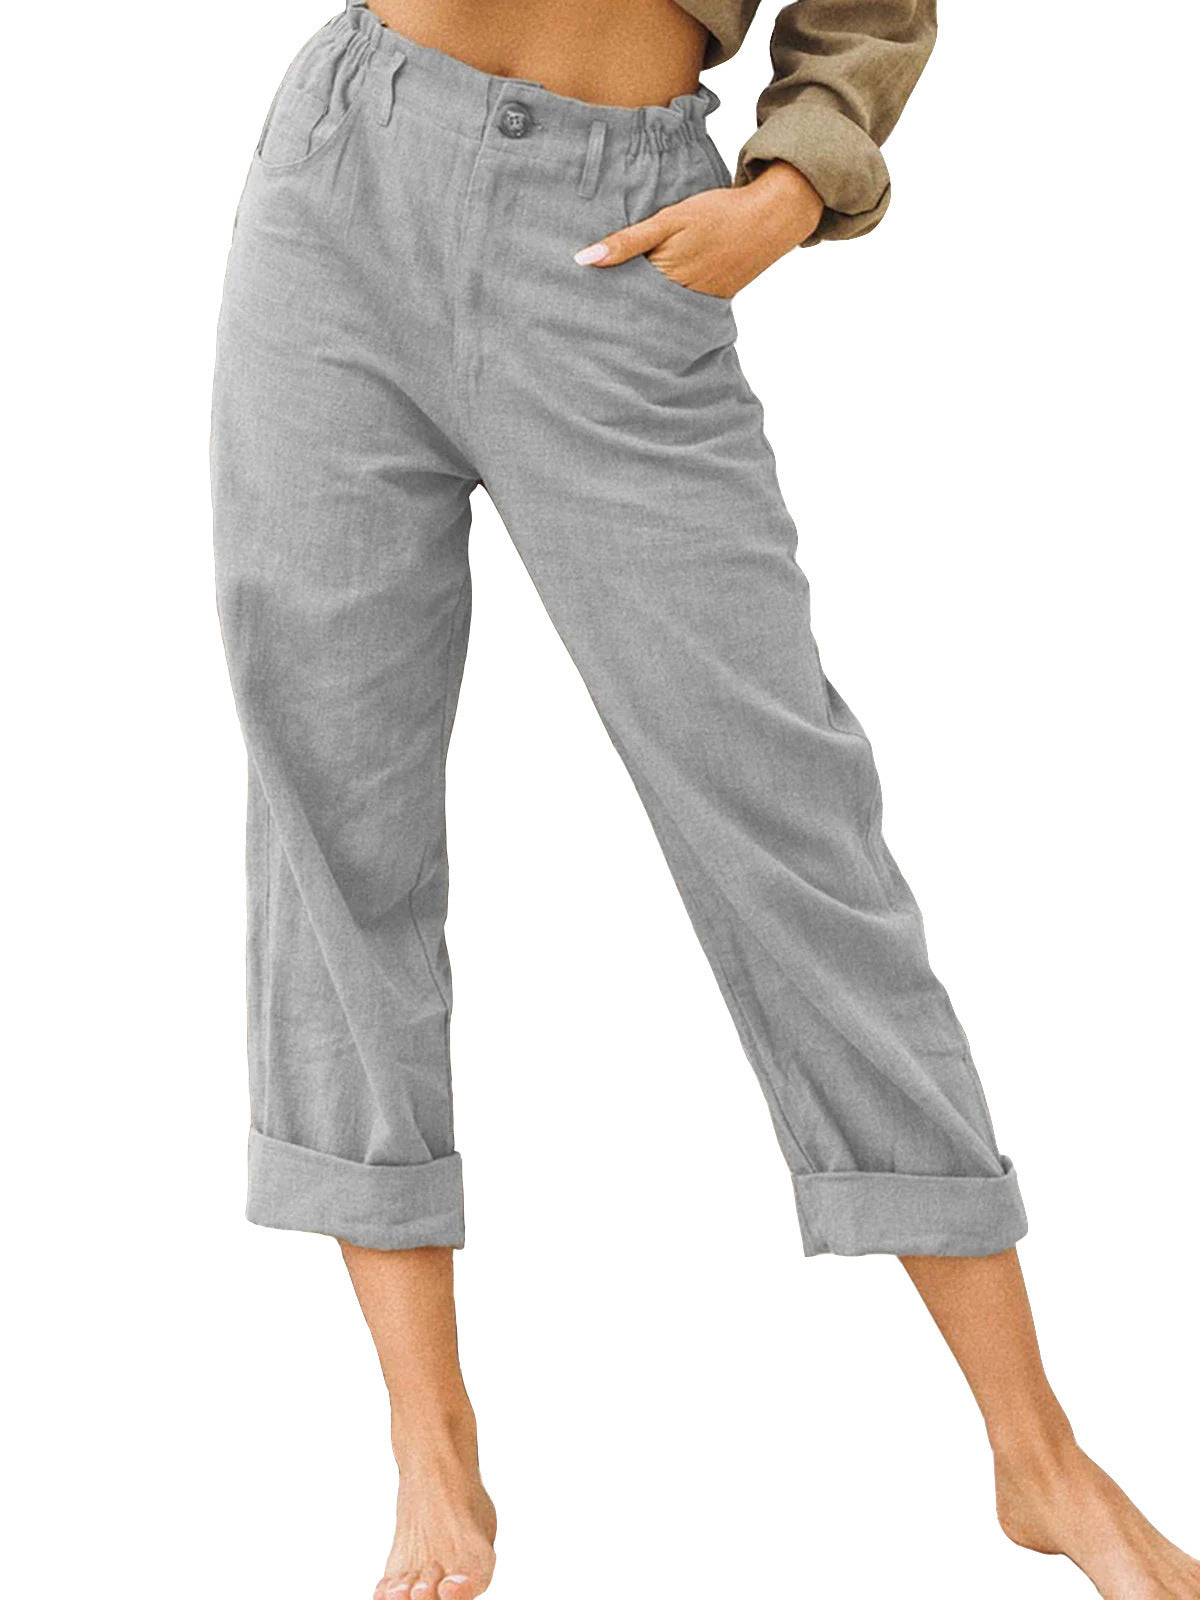 Patchwork Pant Women's Cotton Linen Pants Drawstring Back Elastic Waist Pants Loose Casual Trousers